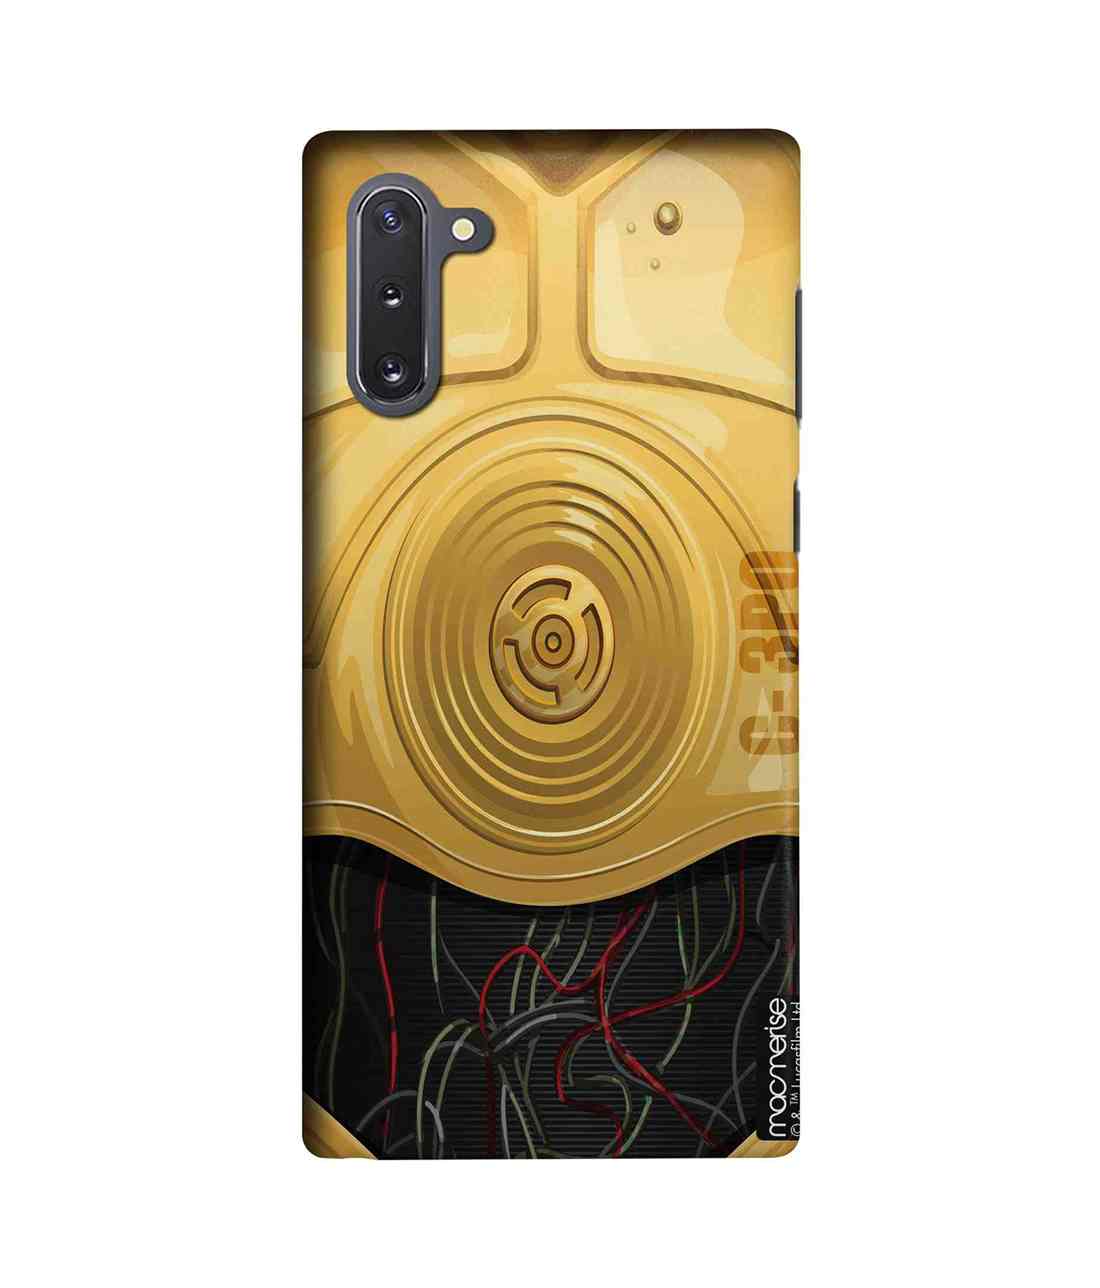 Buy Attire C3PO - Sleek Phone Case for Samsung Note10 Online